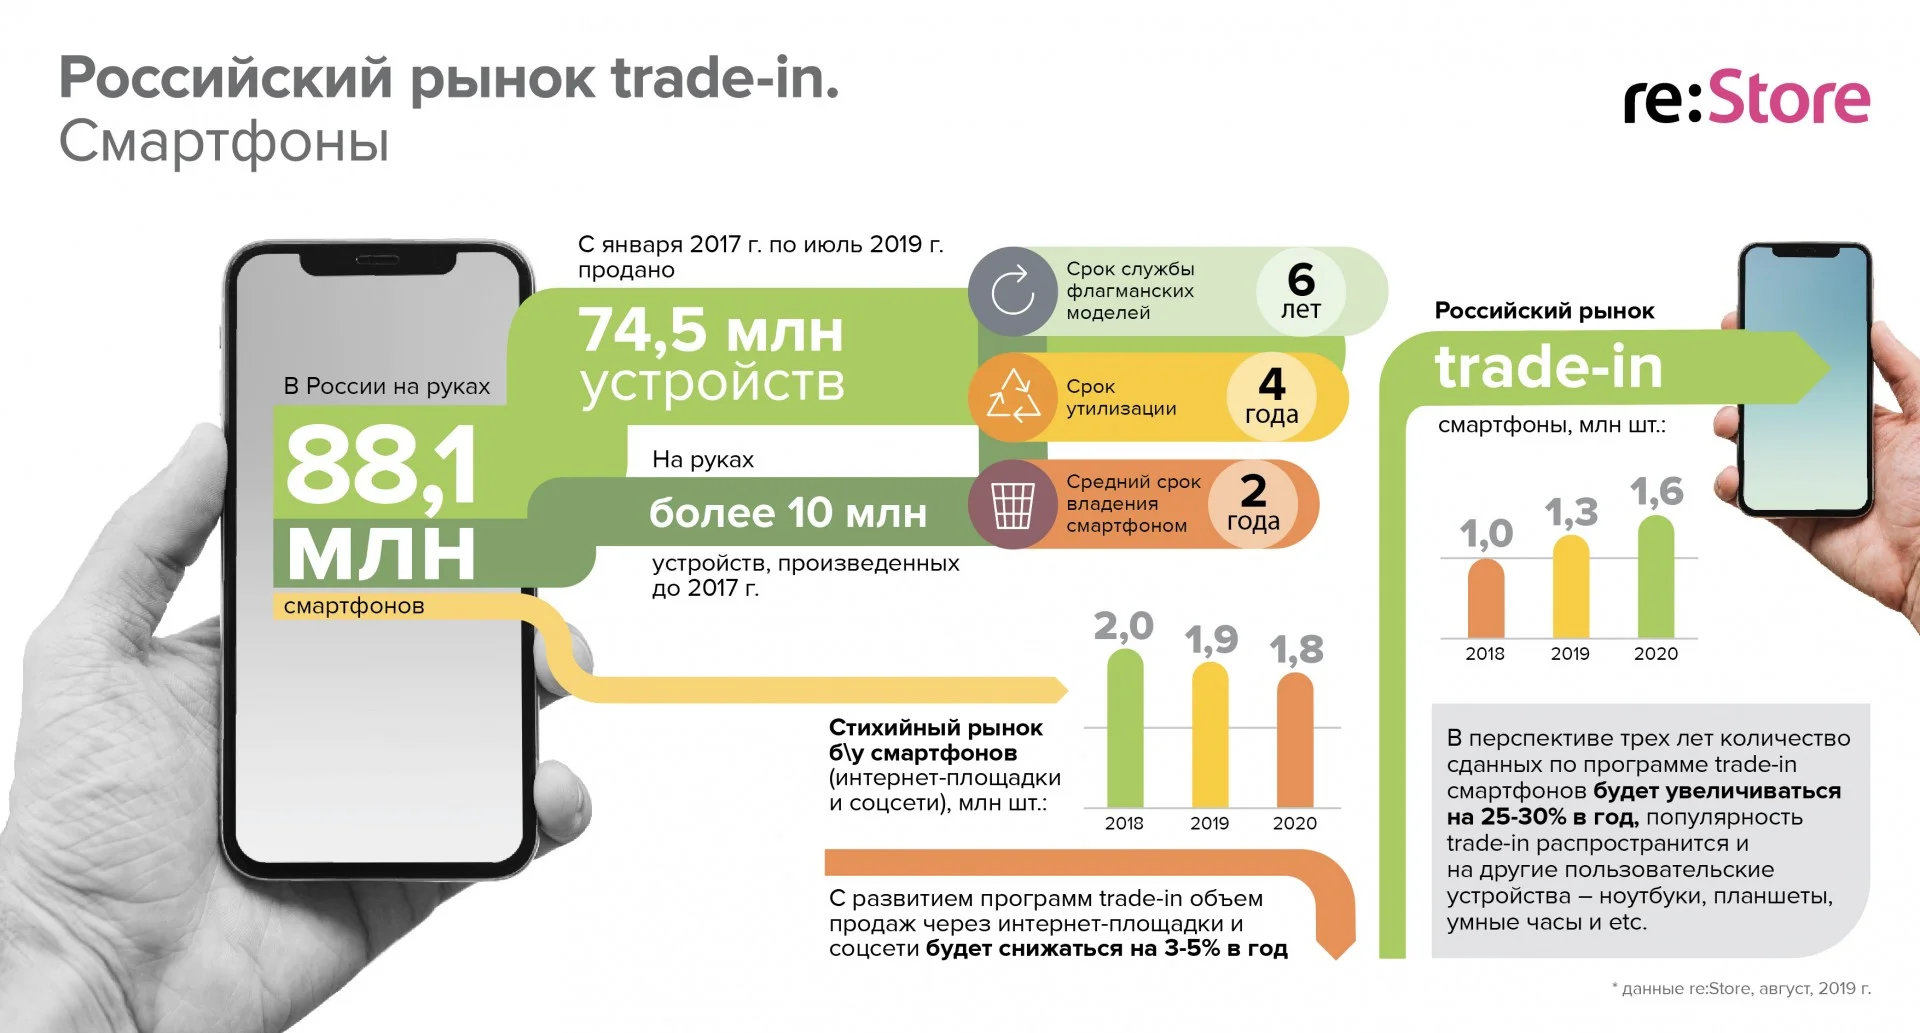 Объёмы trade-in в России растут — в этом году пользователи могут обменять более 1,3 млн смартфонов - фото 1